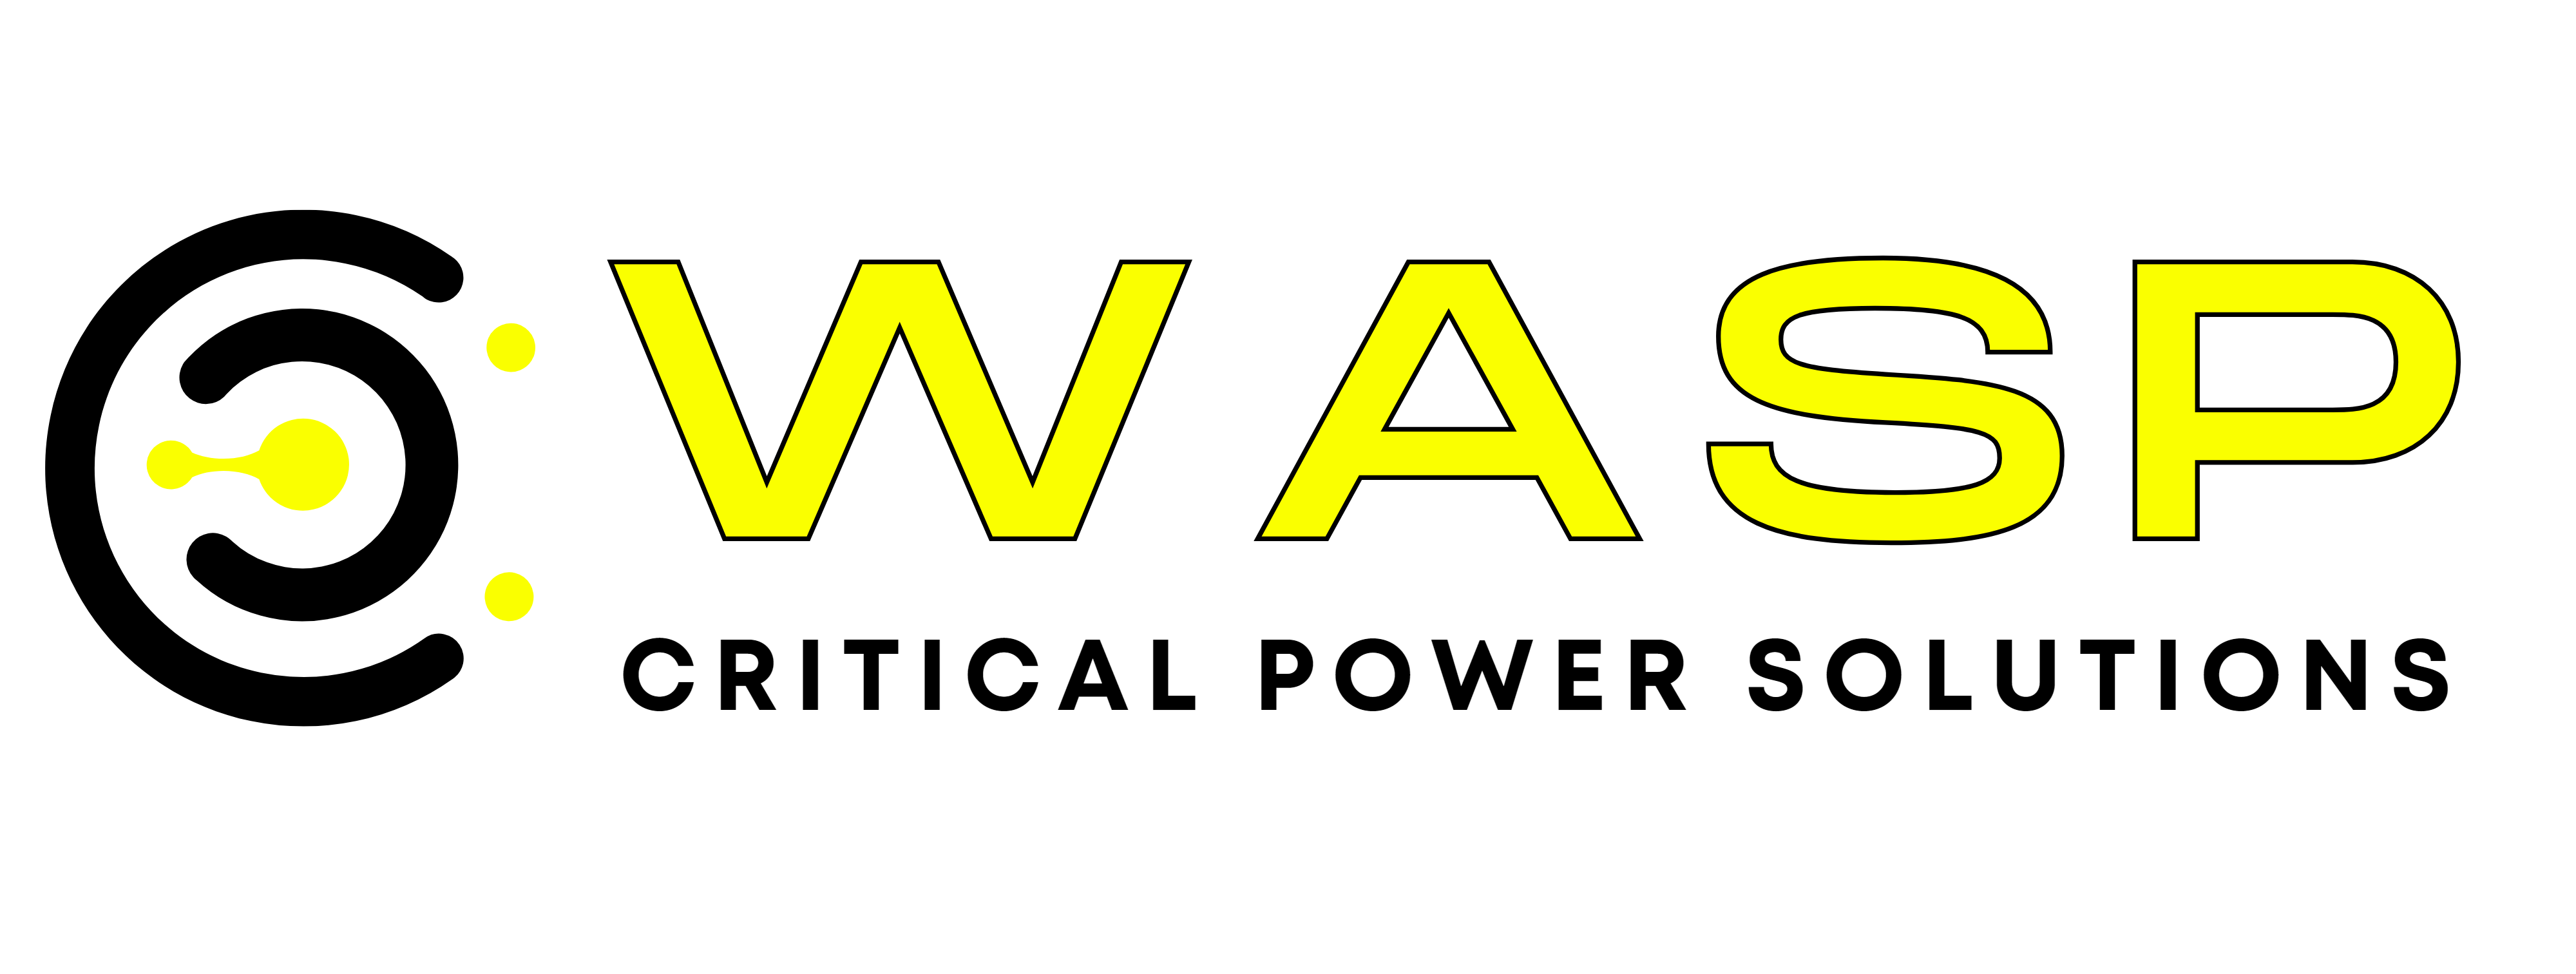 WASP CPES logos